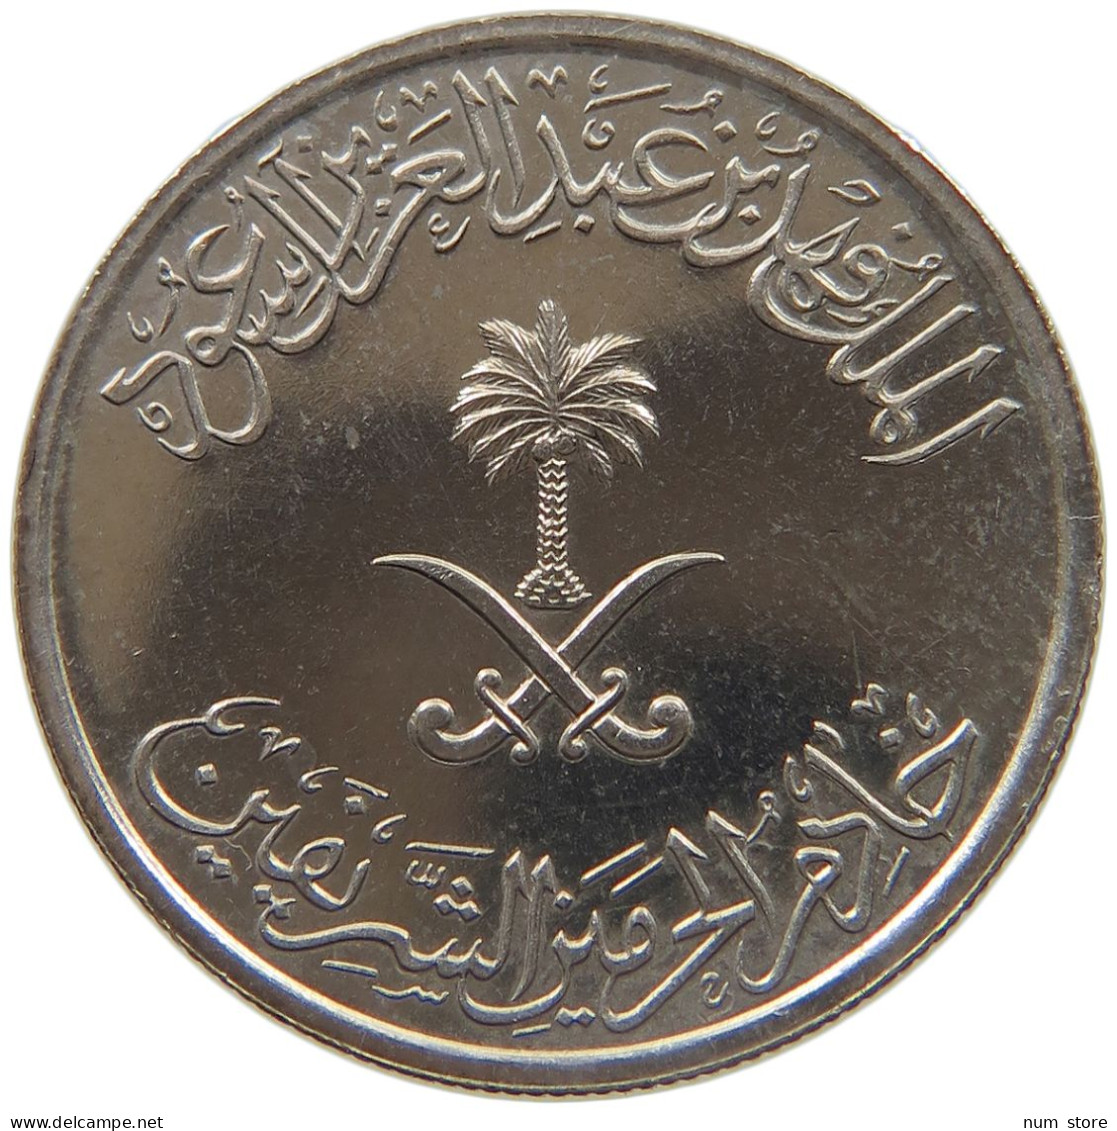 SAUDI ARABIA 10 HALALA 1408  #MA 023264 - Arabie Saoudite